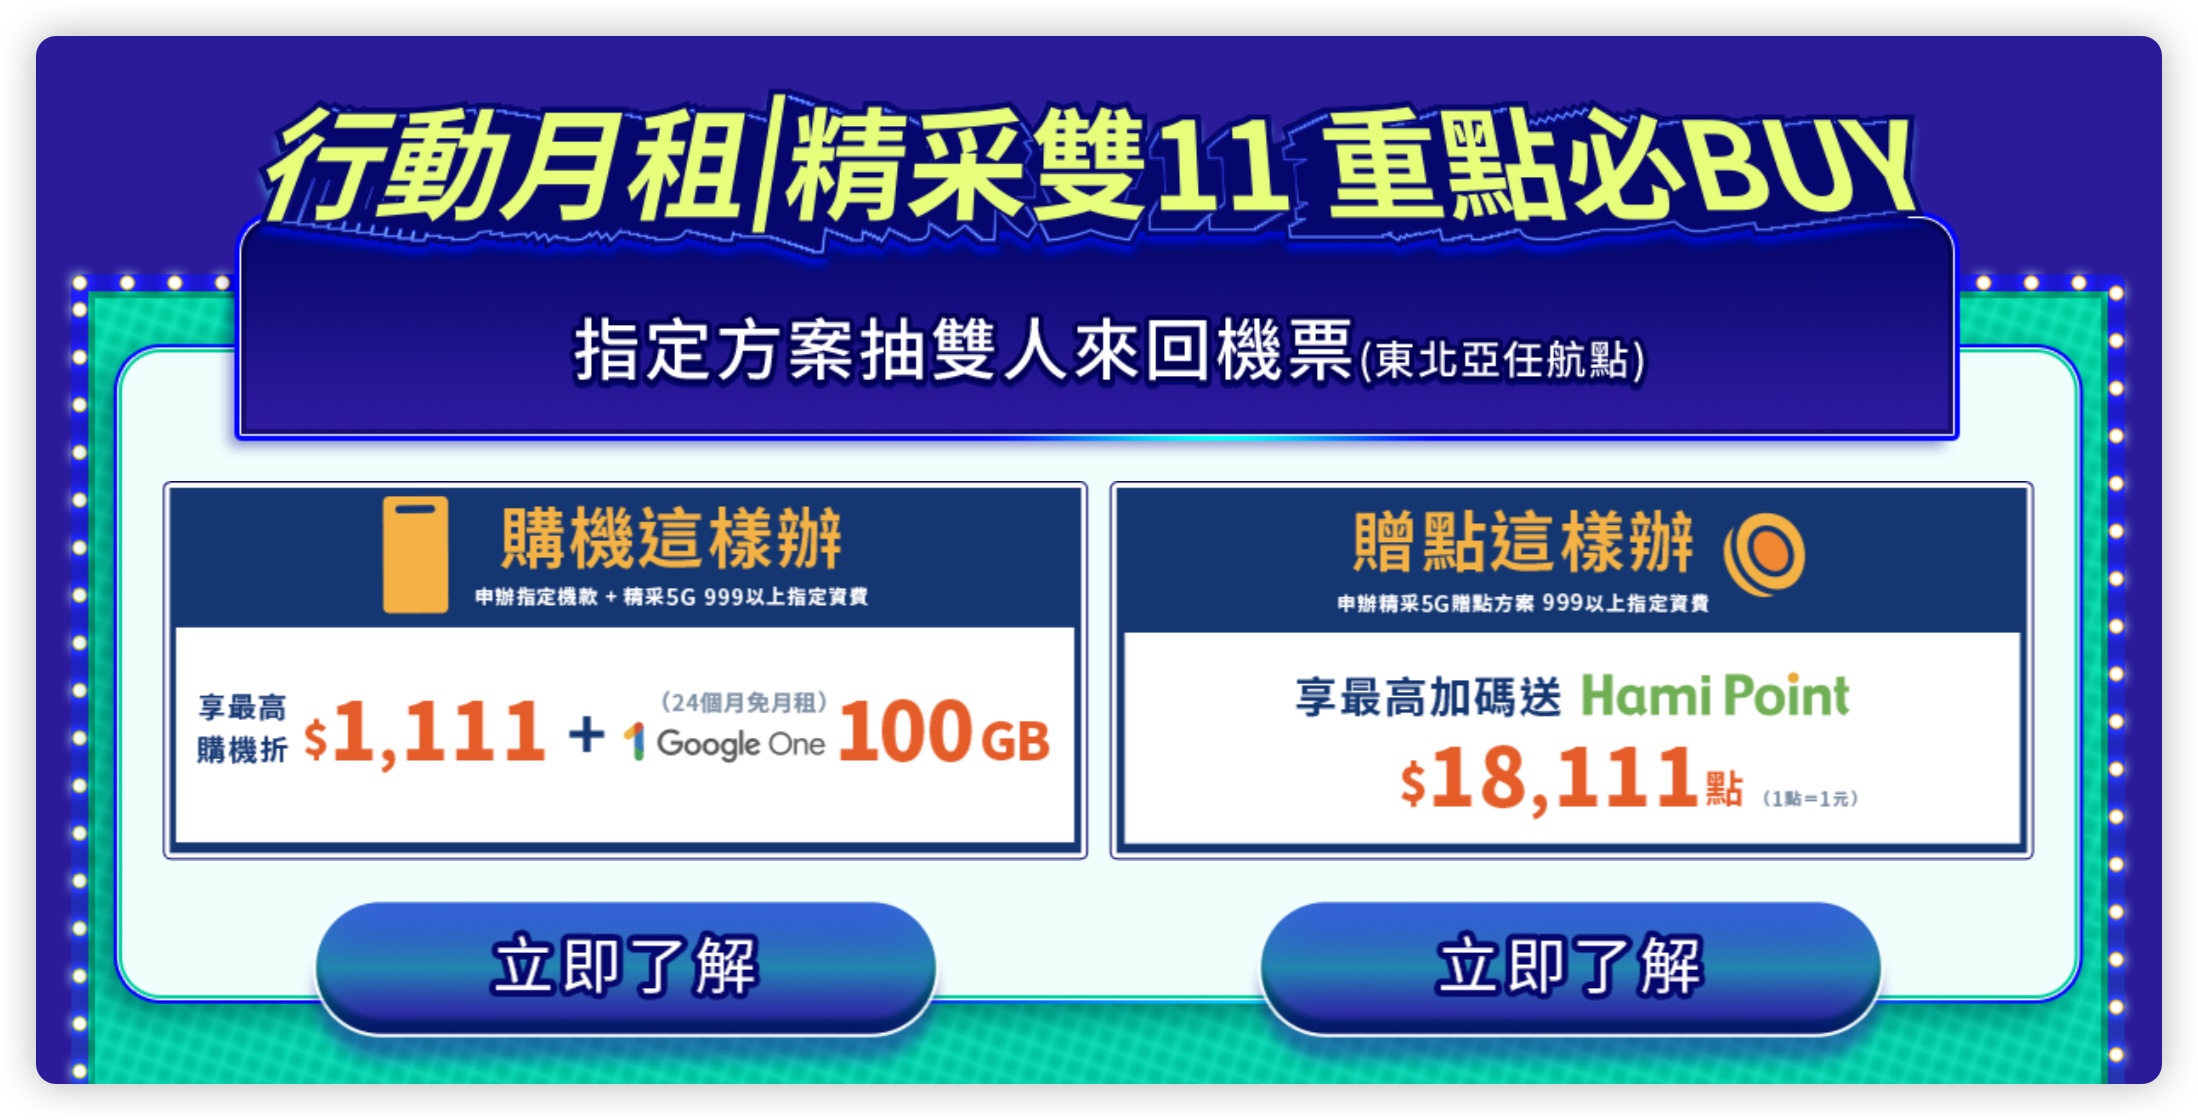 雙 11 iPhone 15 電商平台 購物節 優惠資訊 台灣大哥大